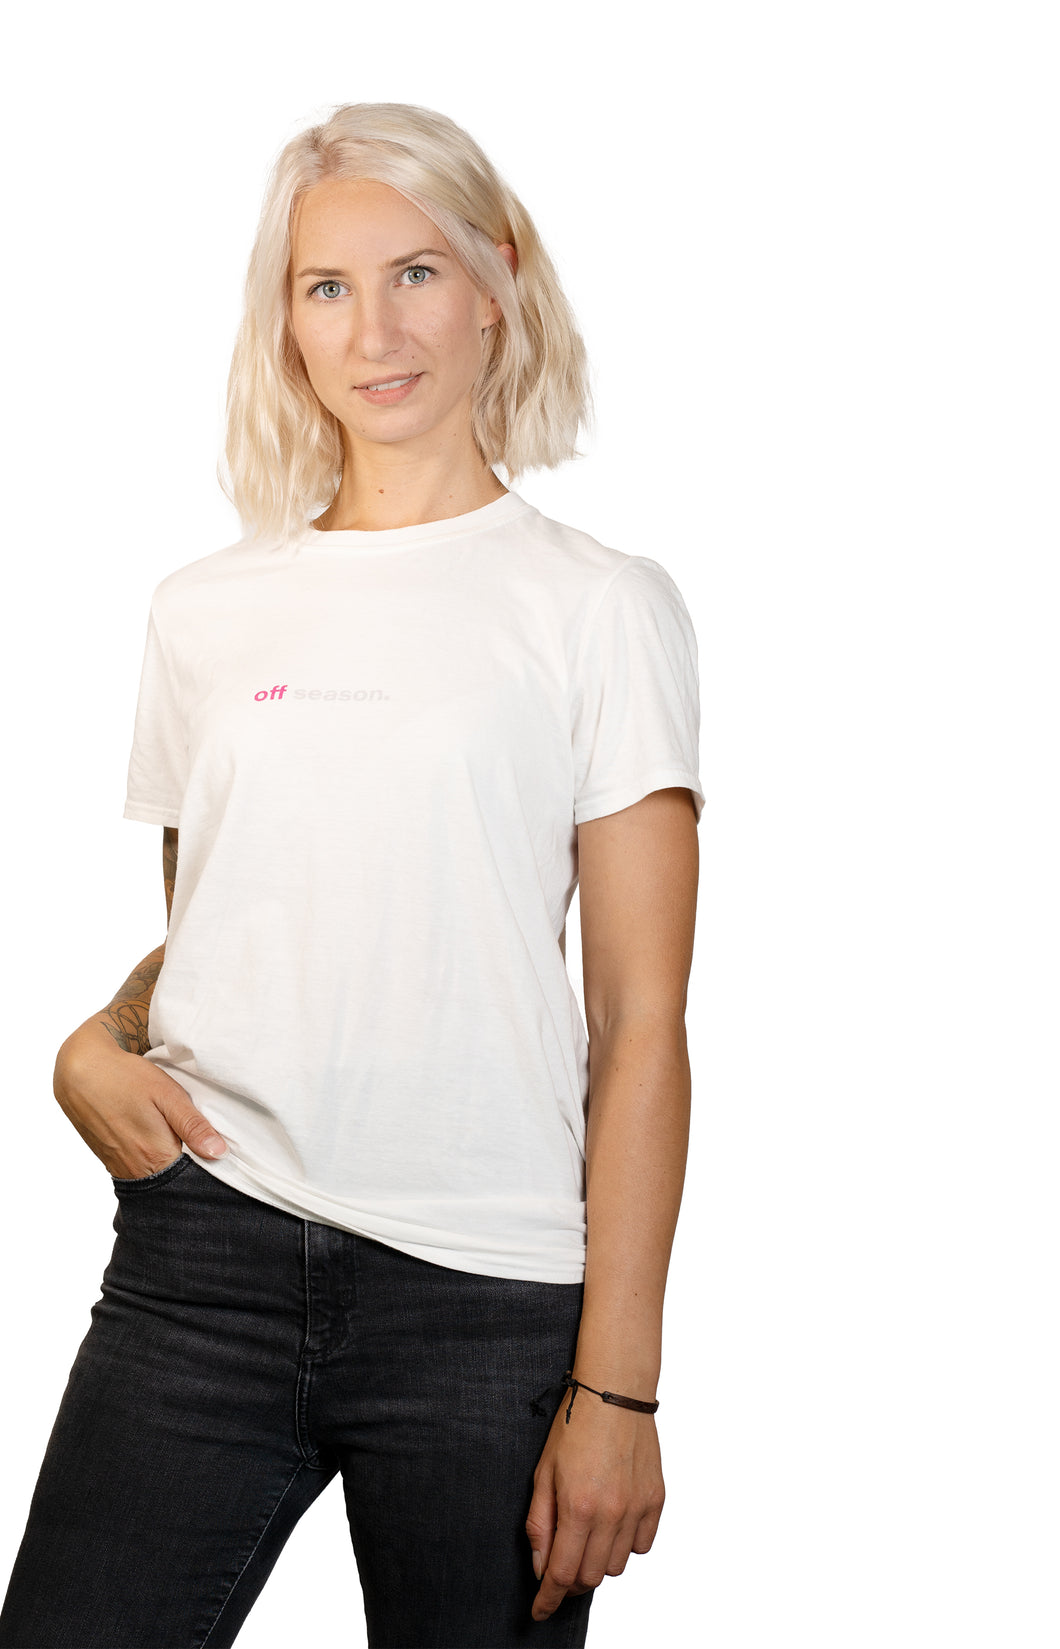 Dashbike Attention Premium-T-Shirt - Damen Weiß